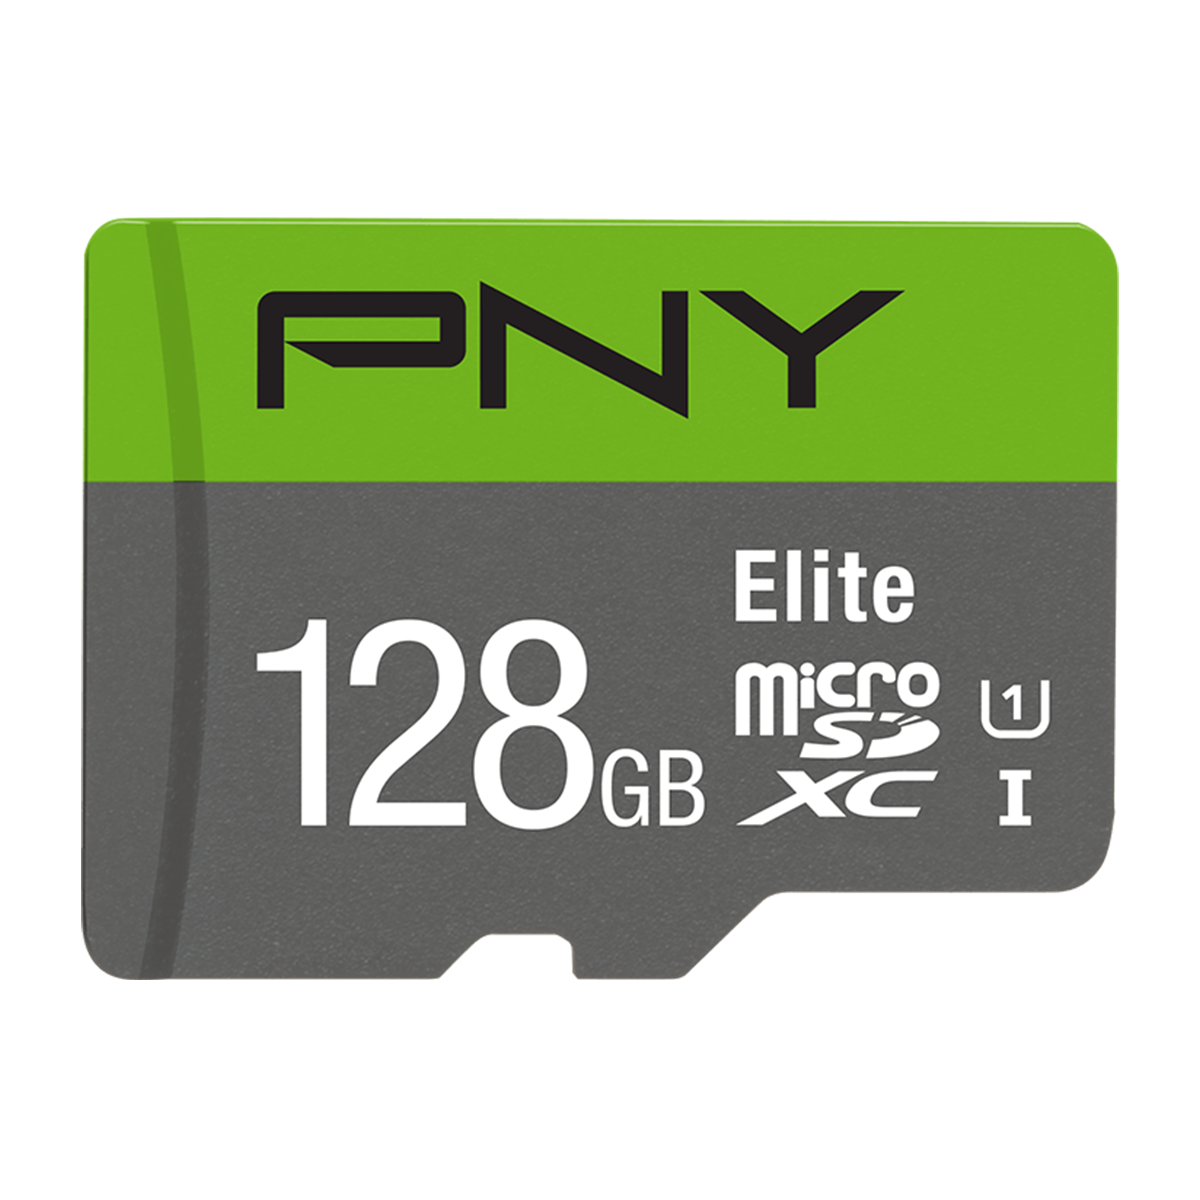 کارت حافظه microSDXC پی ان وای مدل Elite کلاس 10 استاندارد UHS-I سرعت 100MBps ظرفیت 128 گیگابایت به همراه آداپتور SD